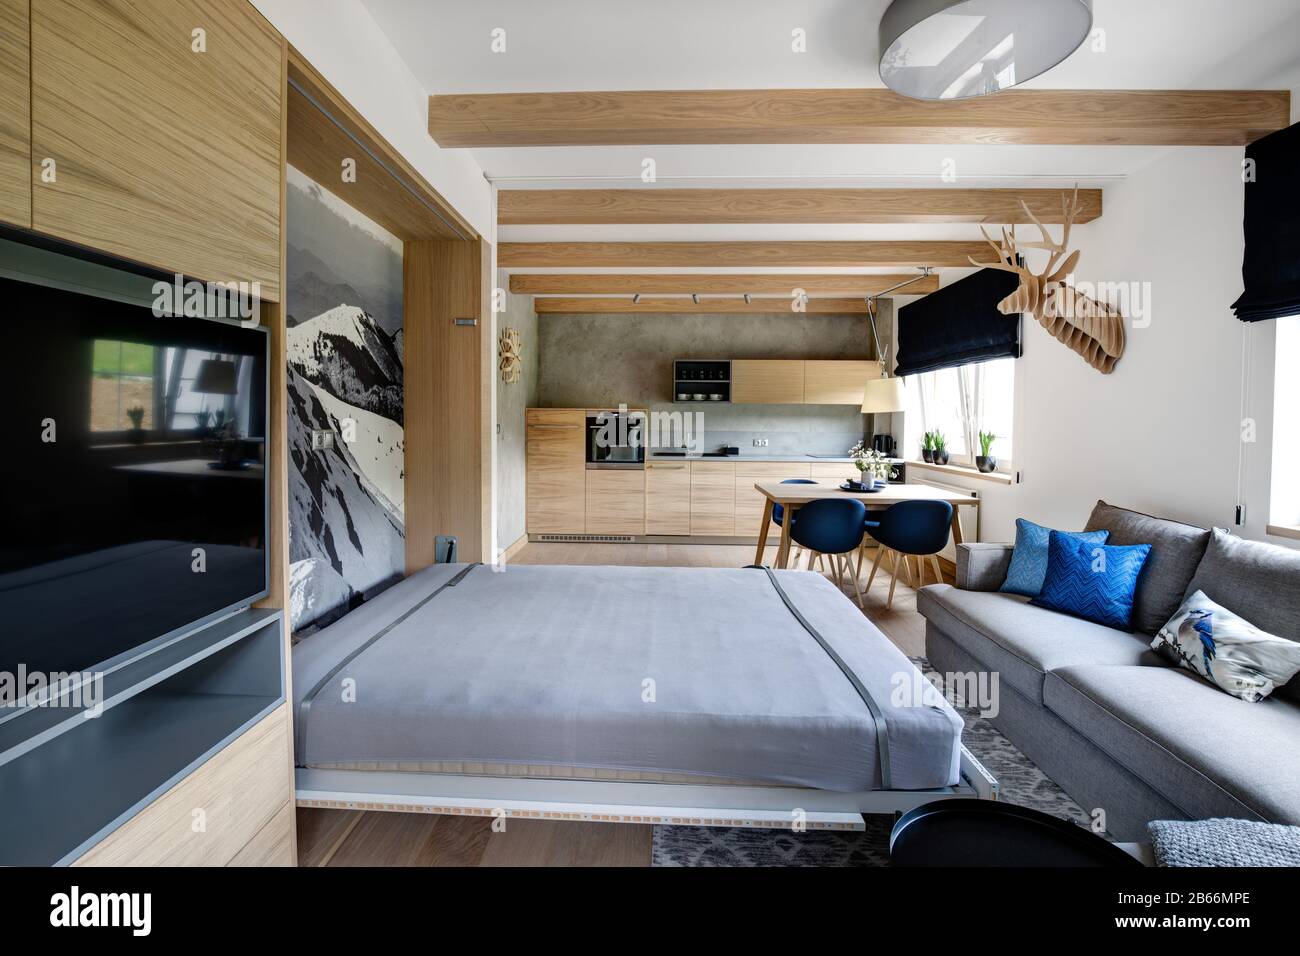 canapé-lit construit dans le mur en bois de l'appartement de montagne Banque D'Images